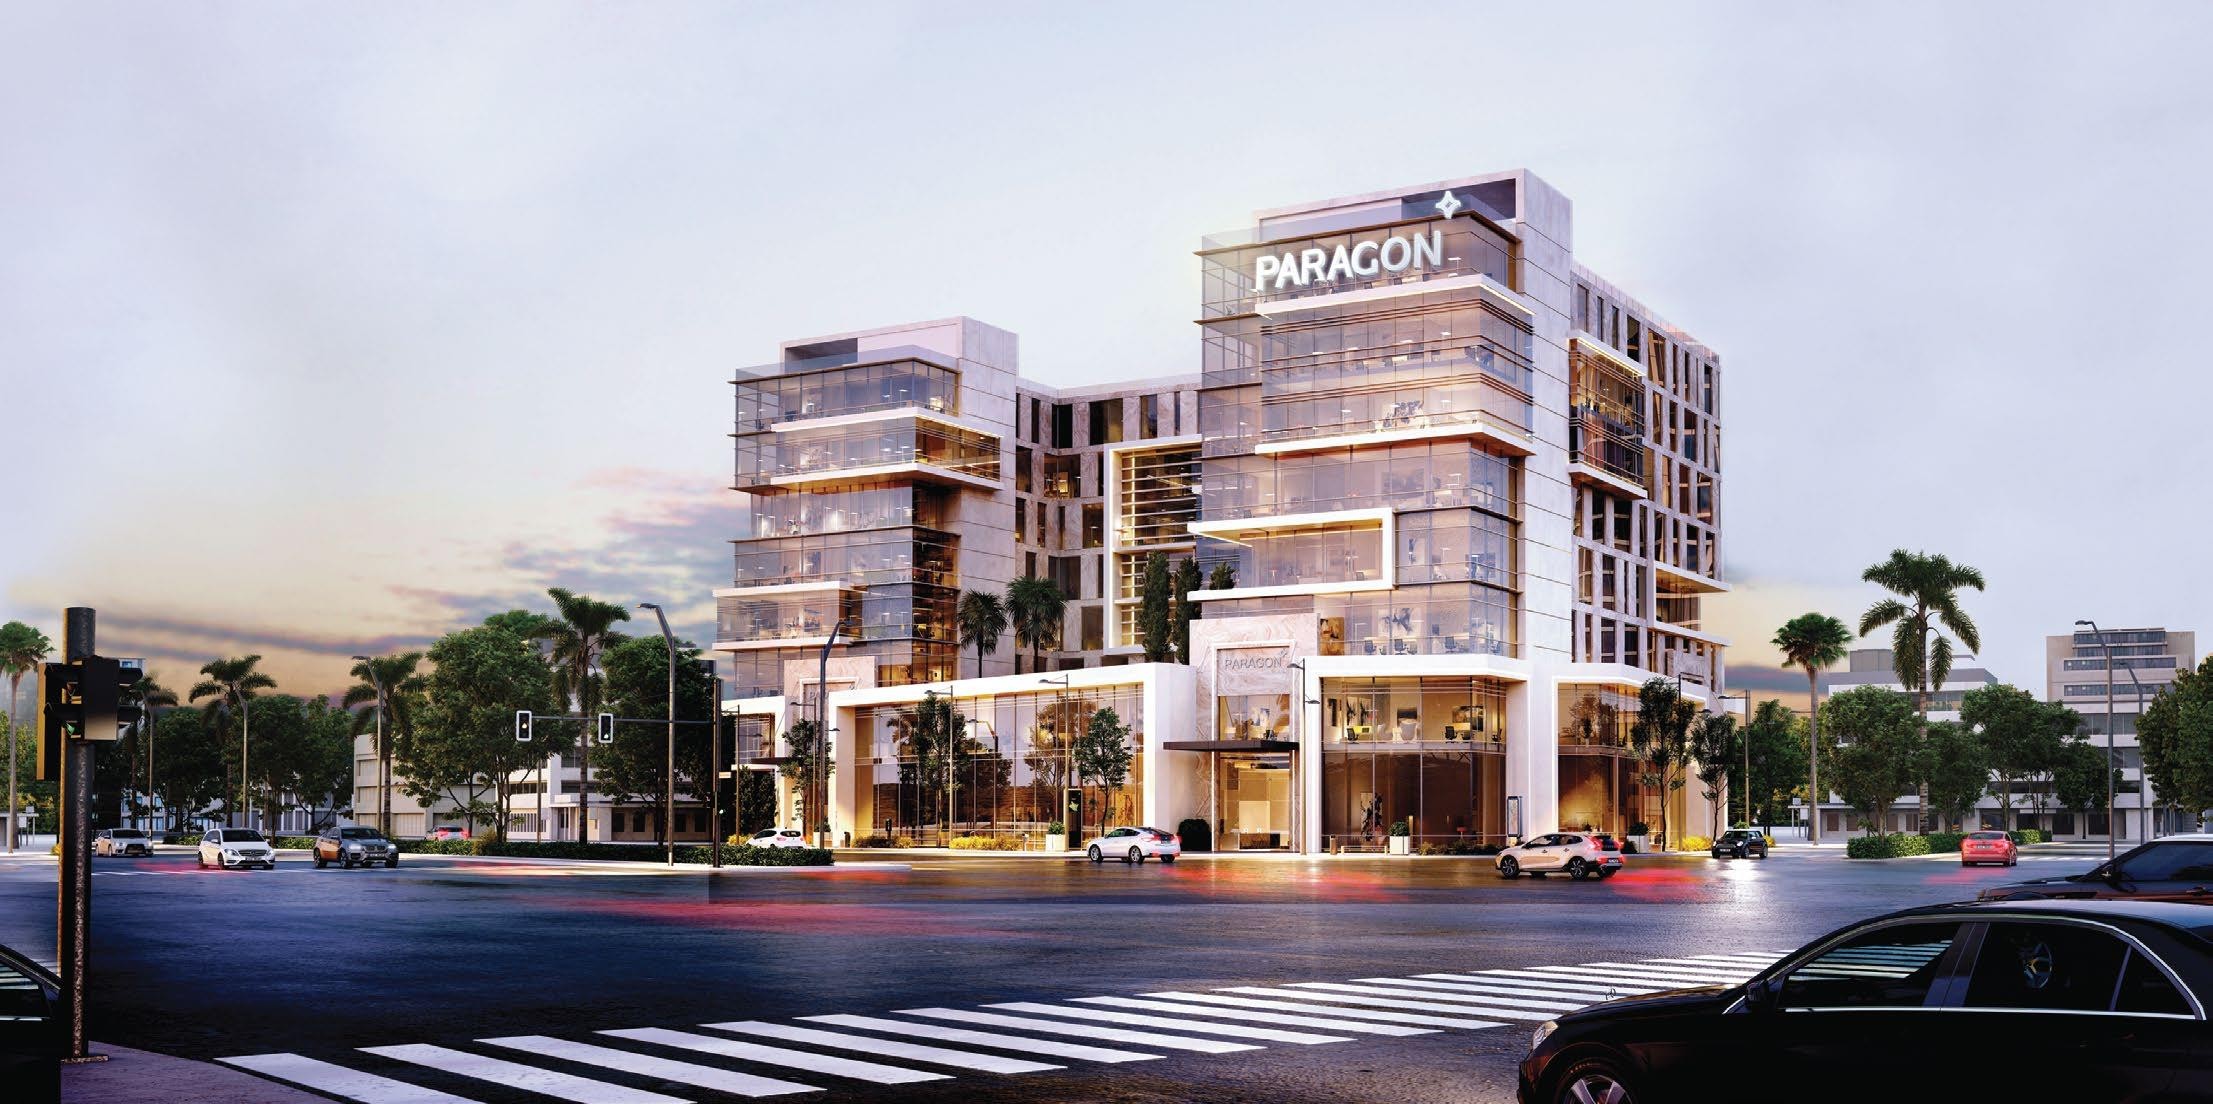 باراجون مول العاصمة الإدارية بلدريا – Paragon New Capital Mall